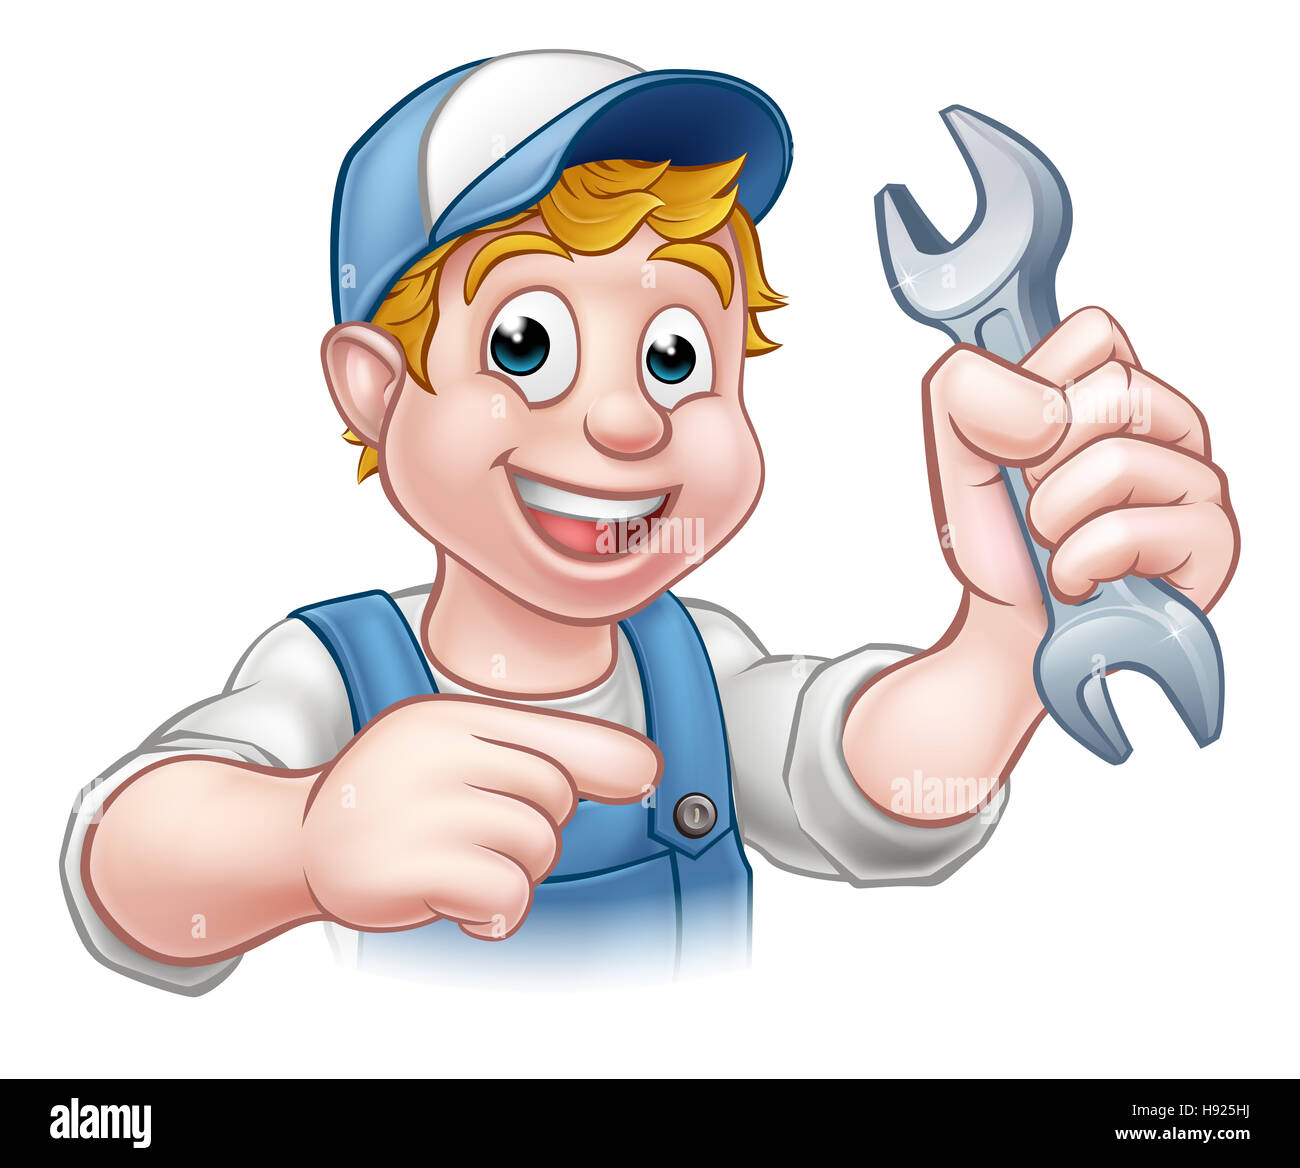 Ein Mechaniker oder Klempner Handwerker Cartoon-Figur hält einen Schraubenschlüssel und zeigen Stockfoto